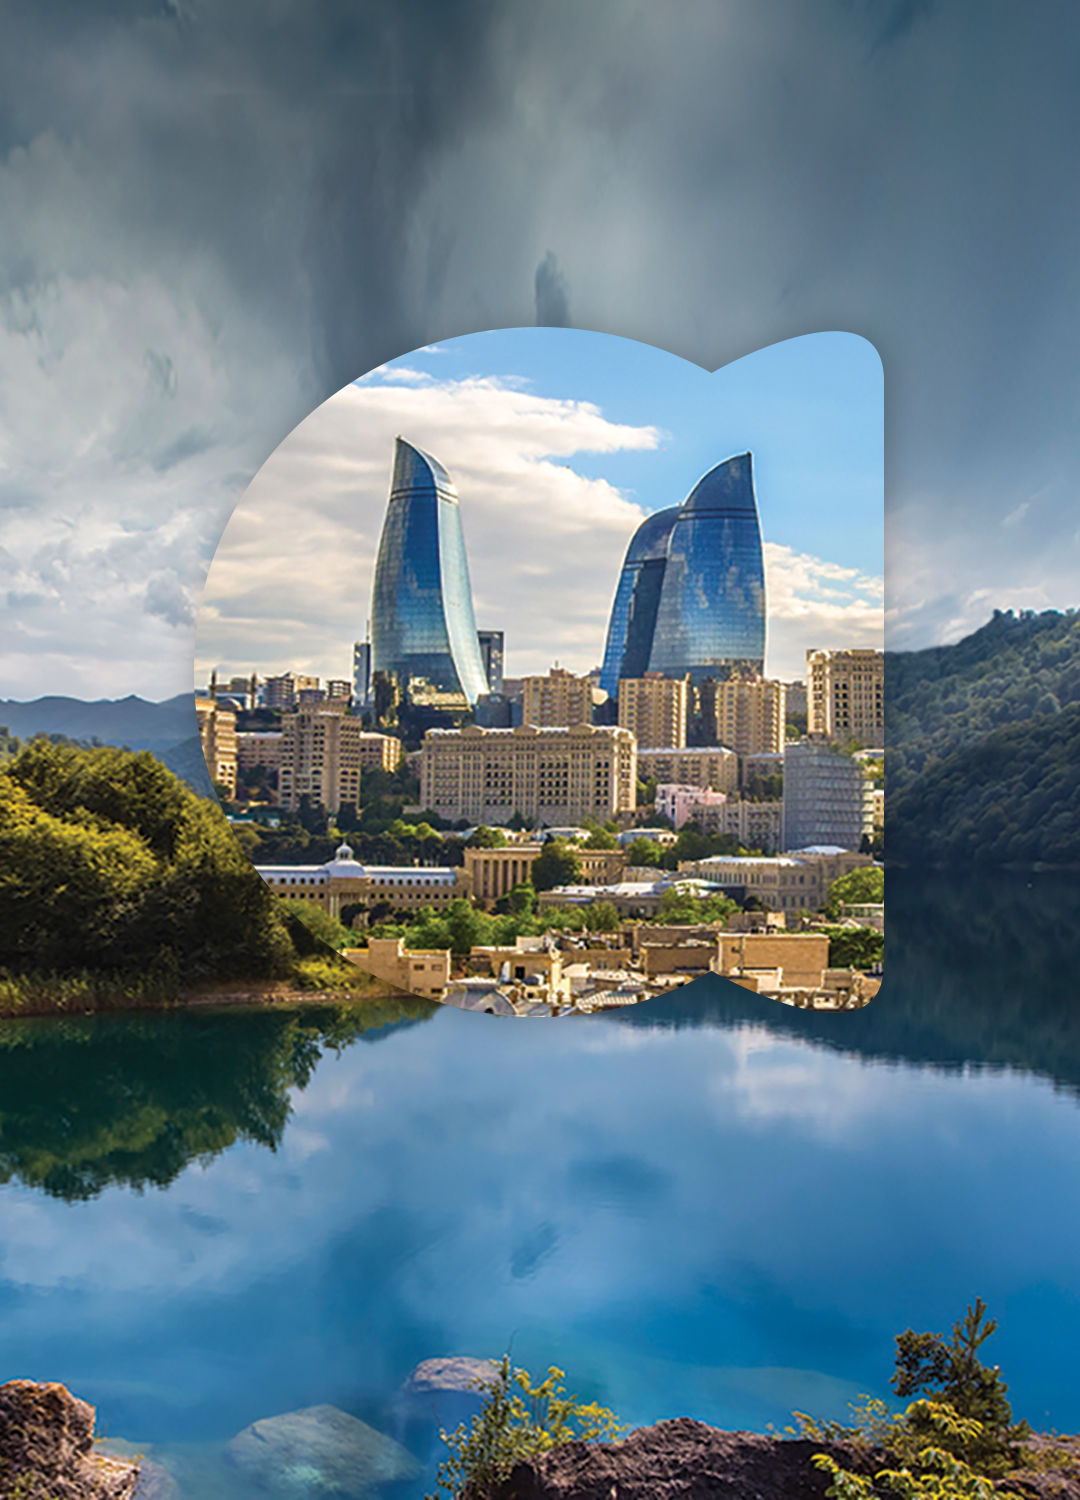 السفر الى اذربيجان